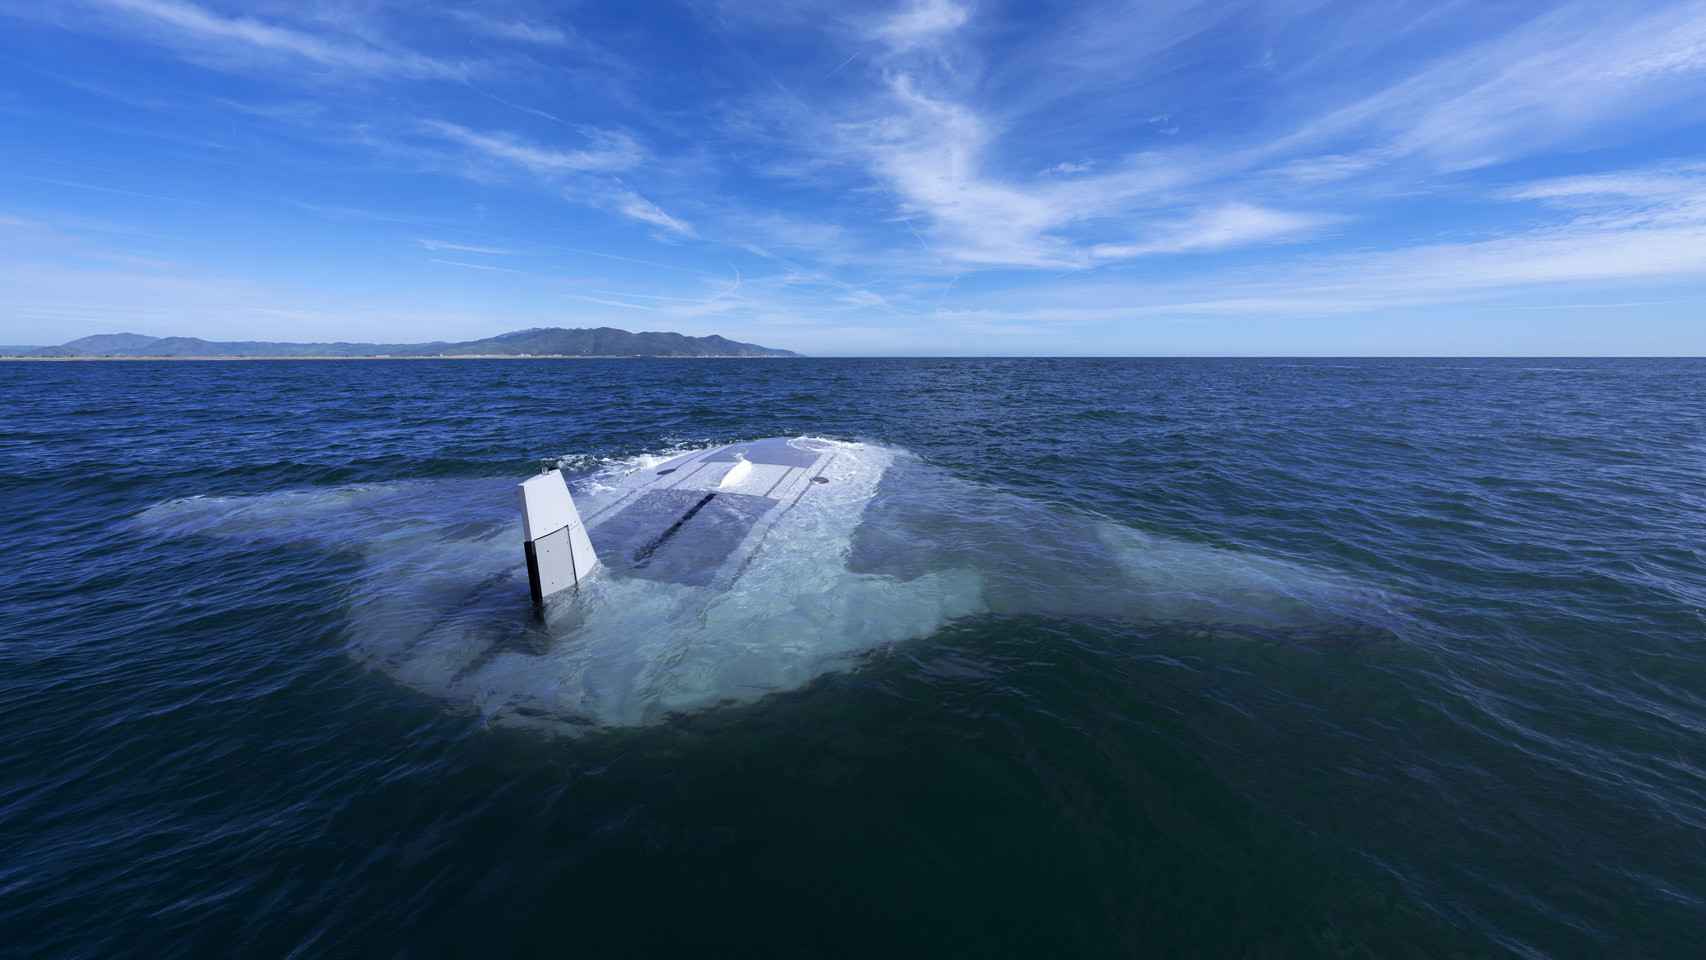 el dron mantarraya por fin se deja ver: así es el nuevo submarino gigante de eeuu que espía durante semanas